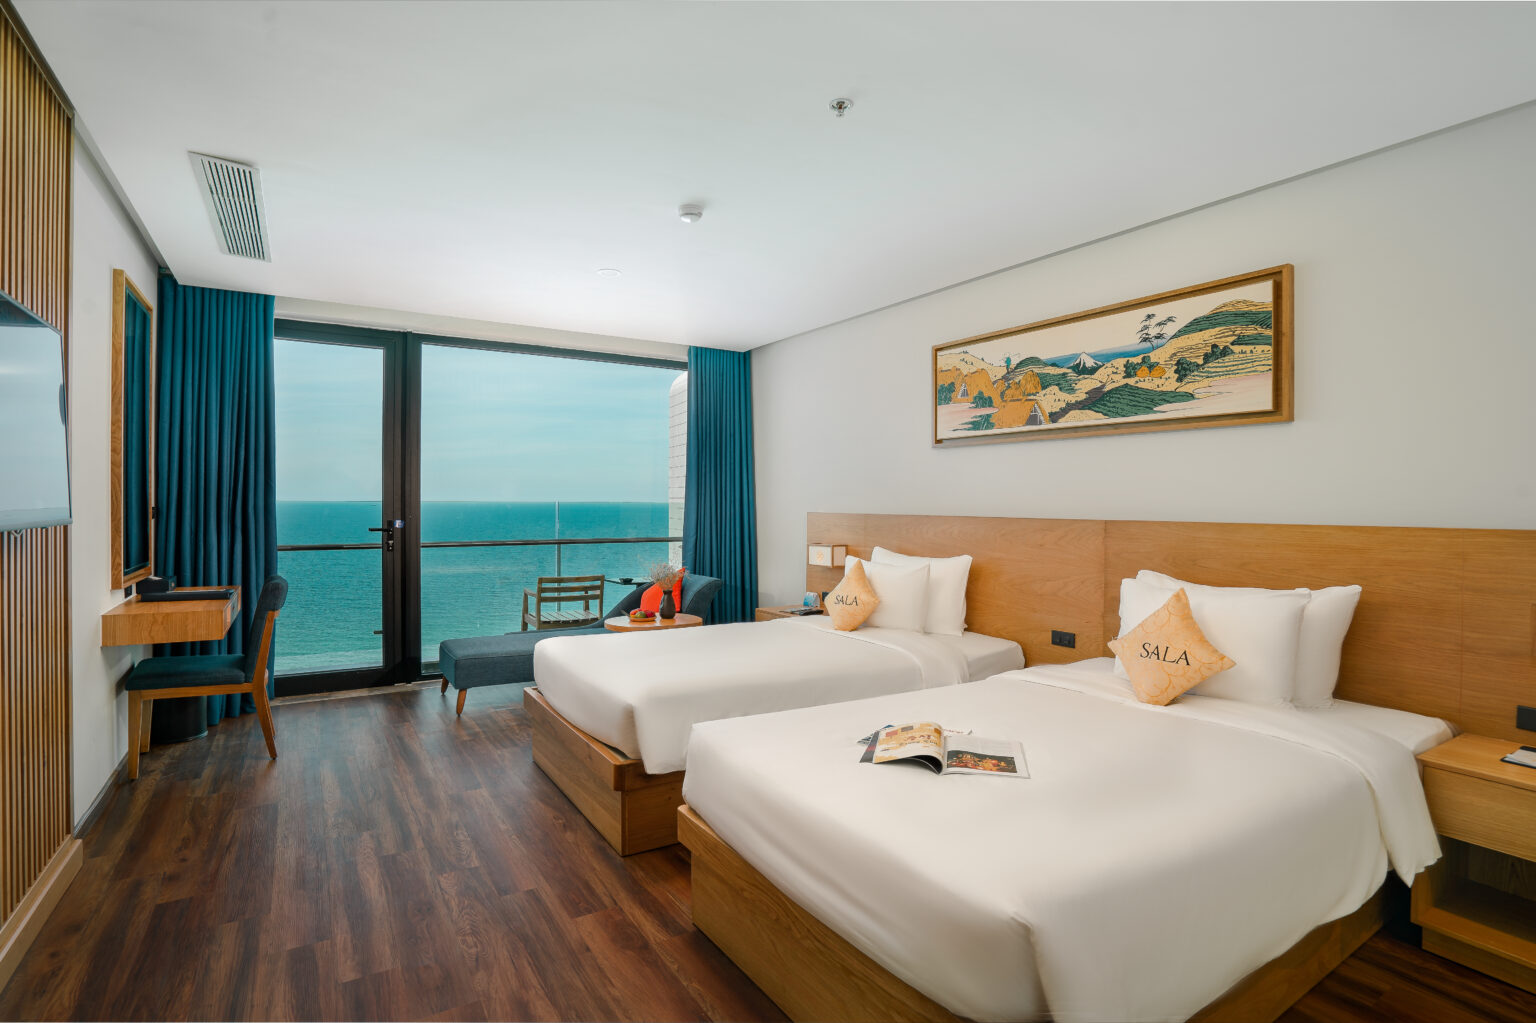 khách sạn sala da nang beach hotel